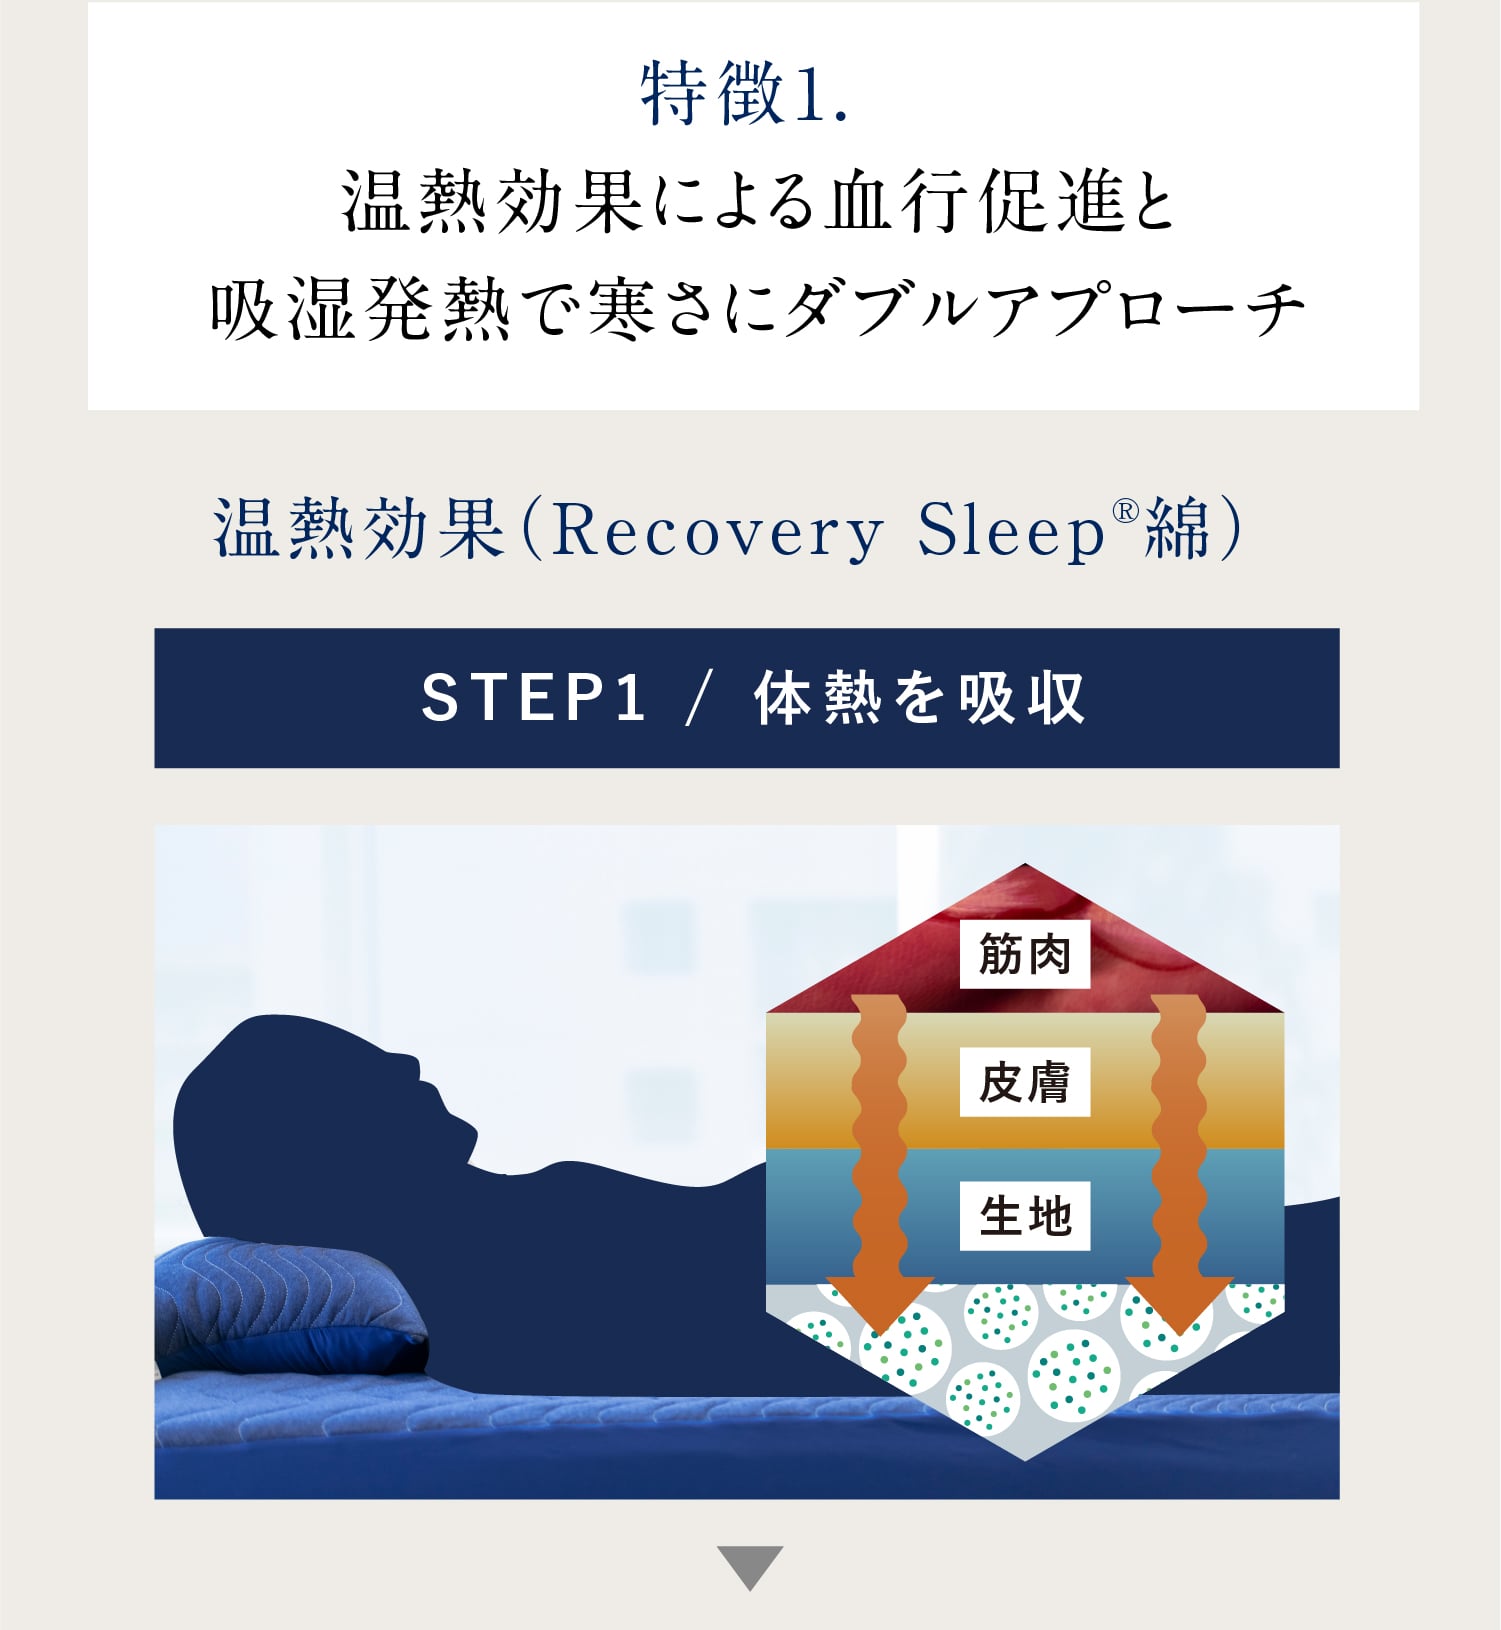 特徴1. 温熱効果による血行促進と吸湿発熱で寒さにダブルアプローチ 温熱効果（Recovery Sleep®綿）STEP1 / 体熱を吸収